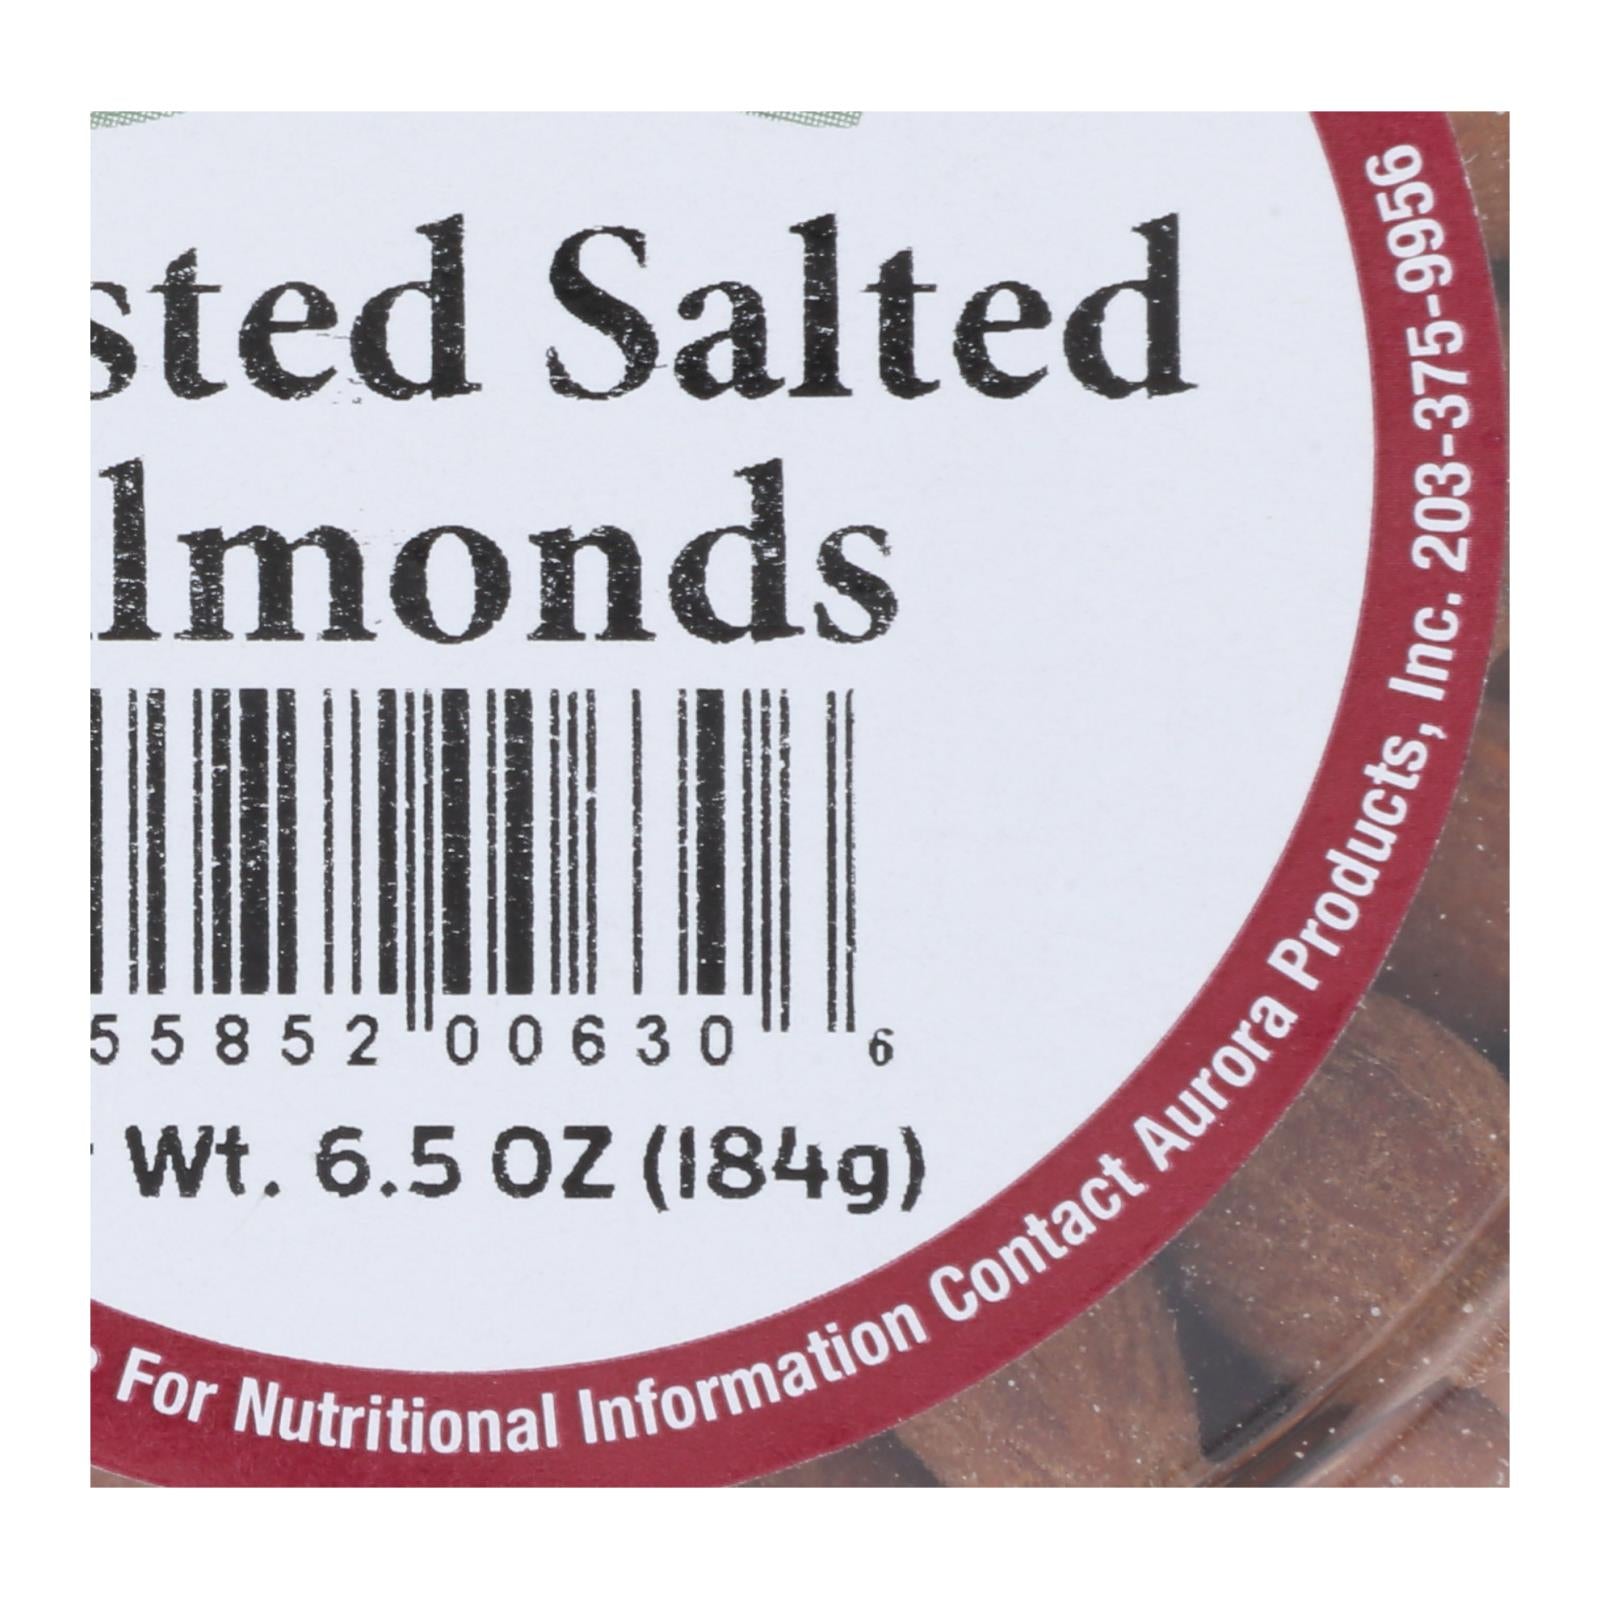 Aurora Natural Products, Aurora Natural Products - Caramel Cup Almonds Rstd.sltd - Case of 12 - 6.5 OZ (Pack of 12)